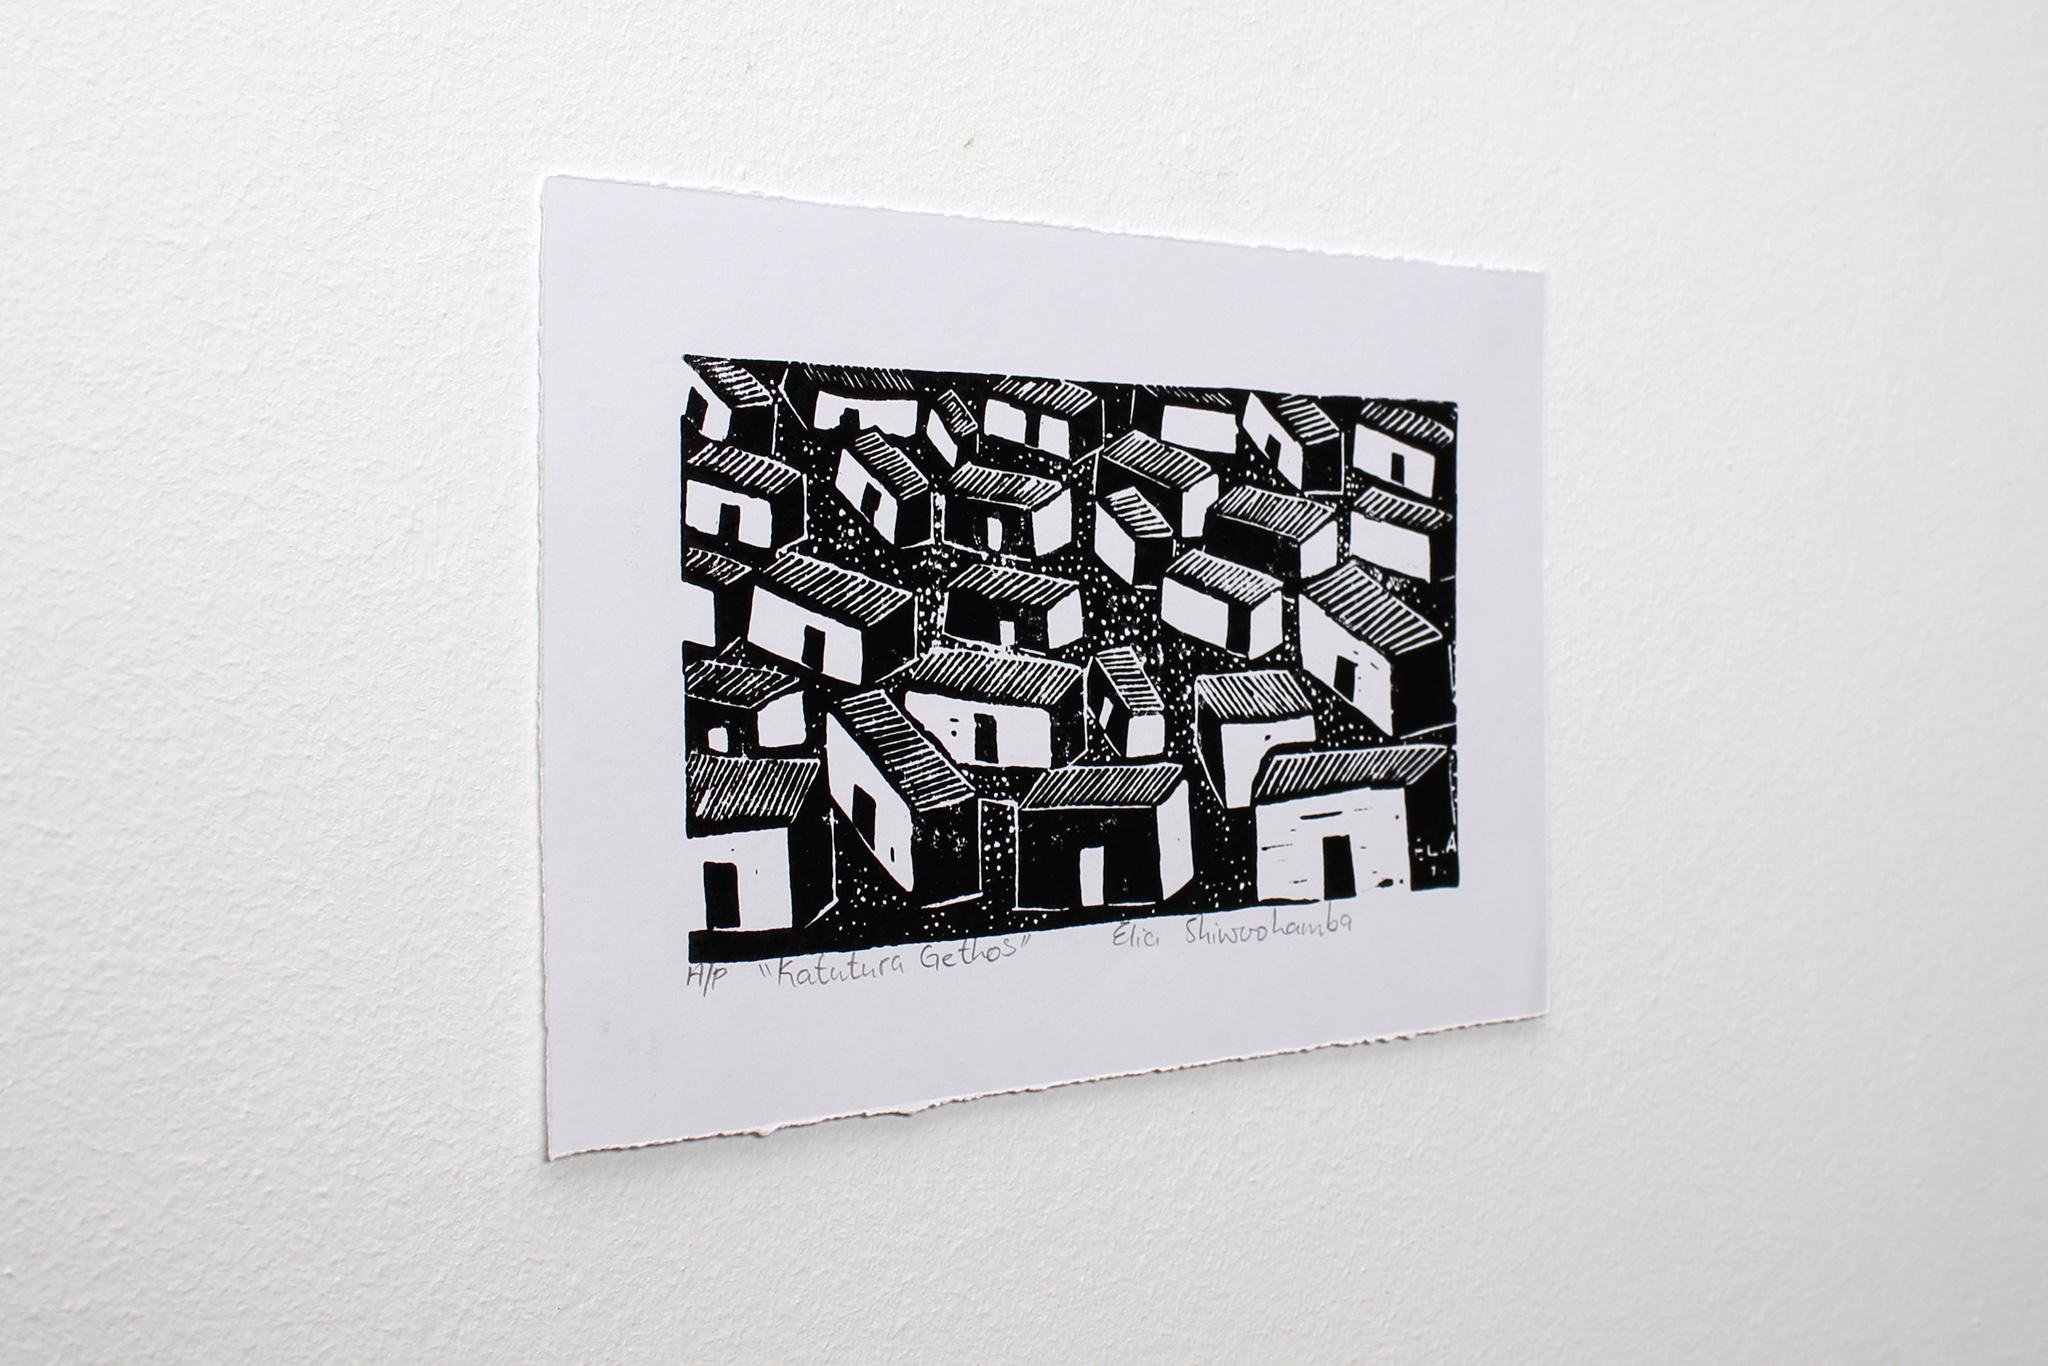 Katutura ghettos, Elia Shiwoohamba, Linoleum block print For Sale 3